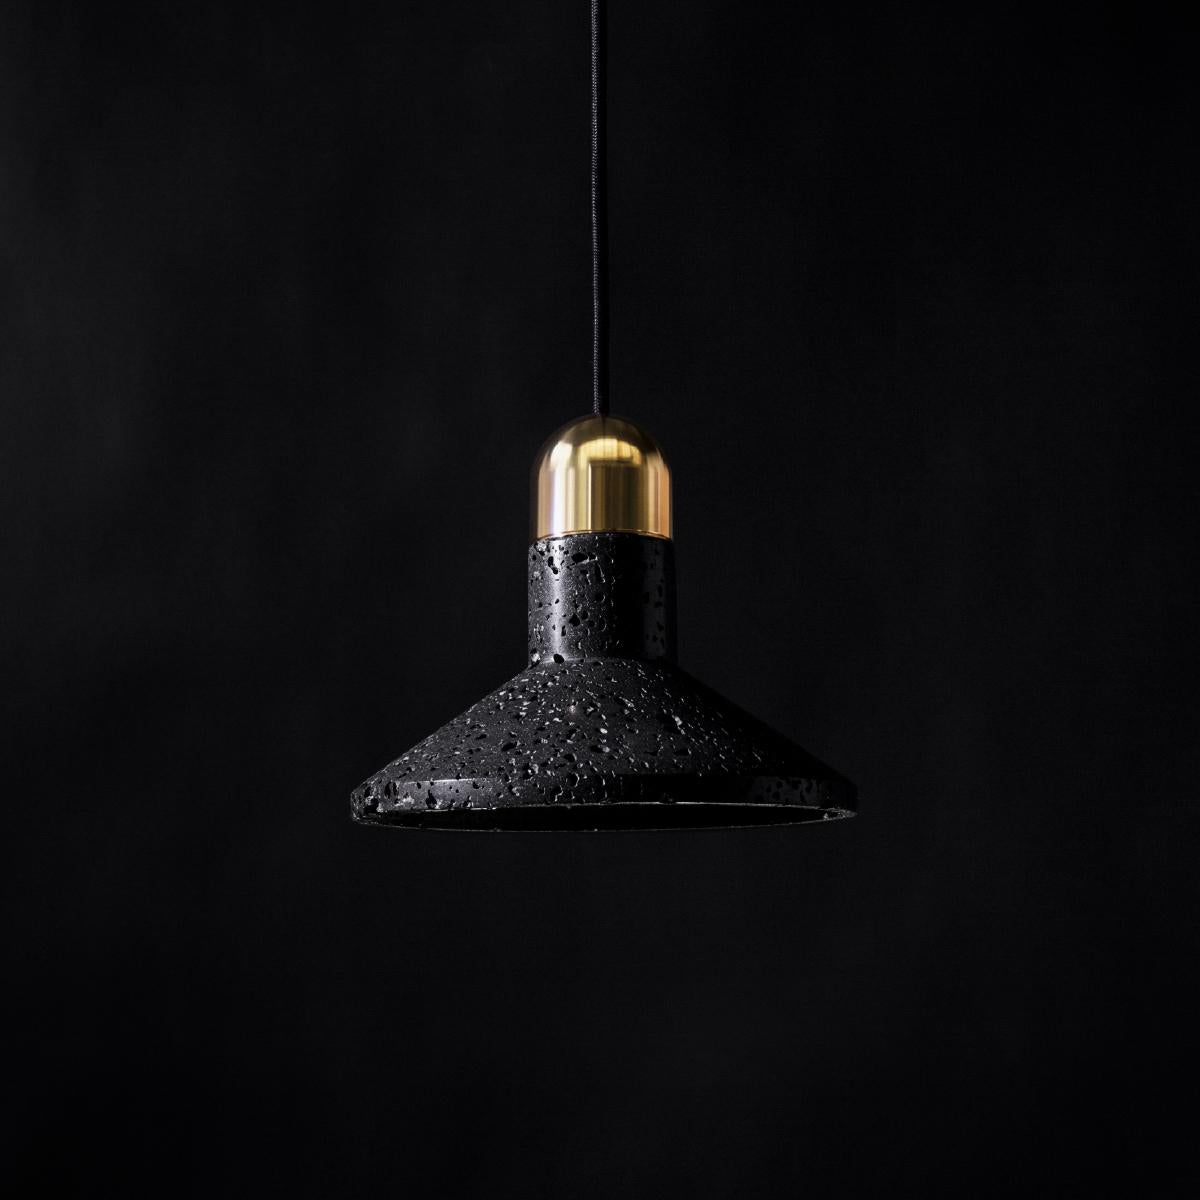 Pendelleuchte 'Shang' von Buzao x Bentu Design. 
Nach der Betonversion folgt nun die schwarze Lavasteinversion!

(einzeln erhältlich)

16 cm Höhe; 20 cm Länge
Kabel: 2 Meter Schwarz (einstellbar)

Ausführung in Messing (gold) oder Aluminium